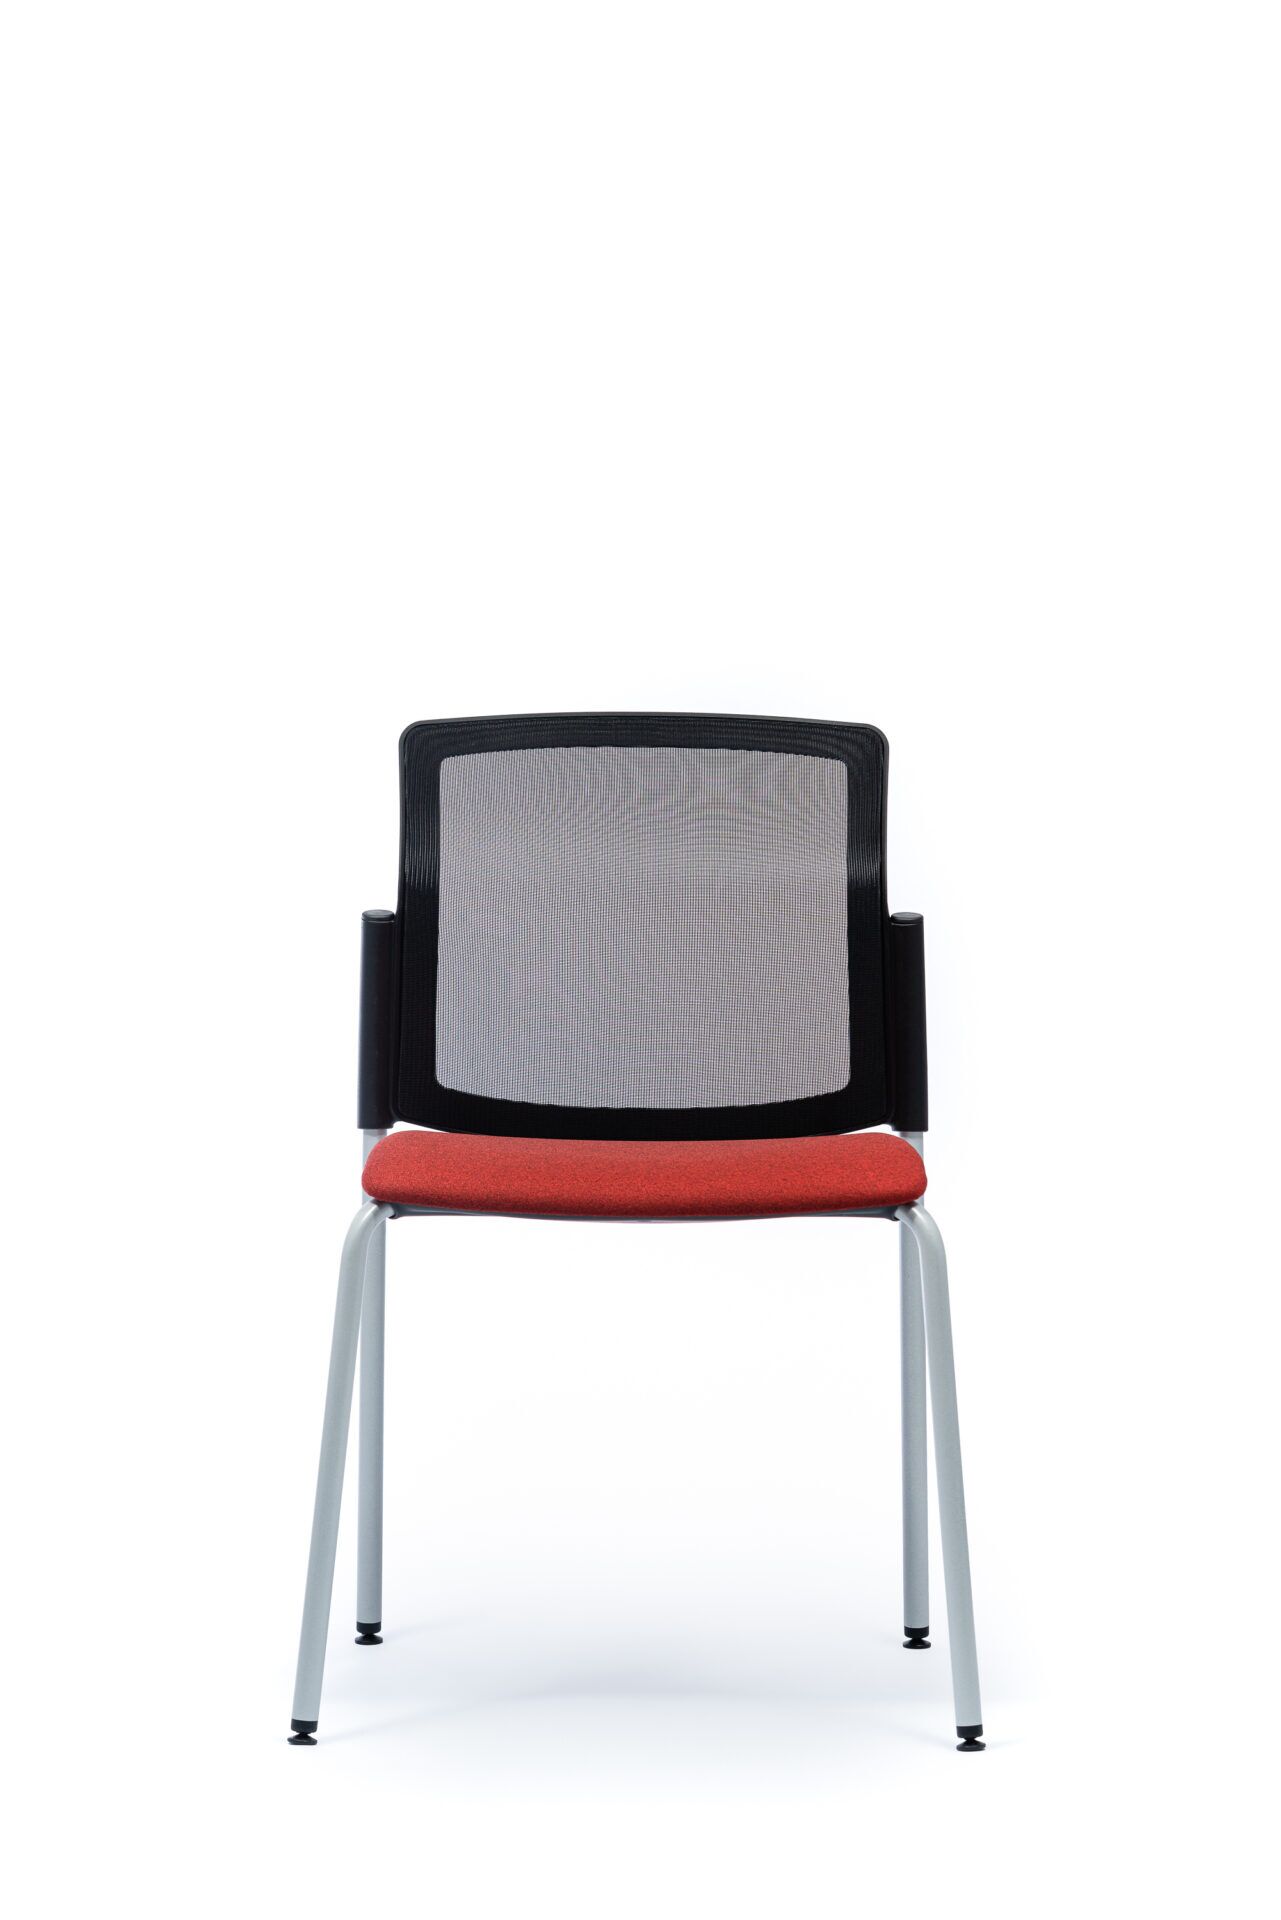 czerwone krzesło biurowe od przodu 4job B-Group